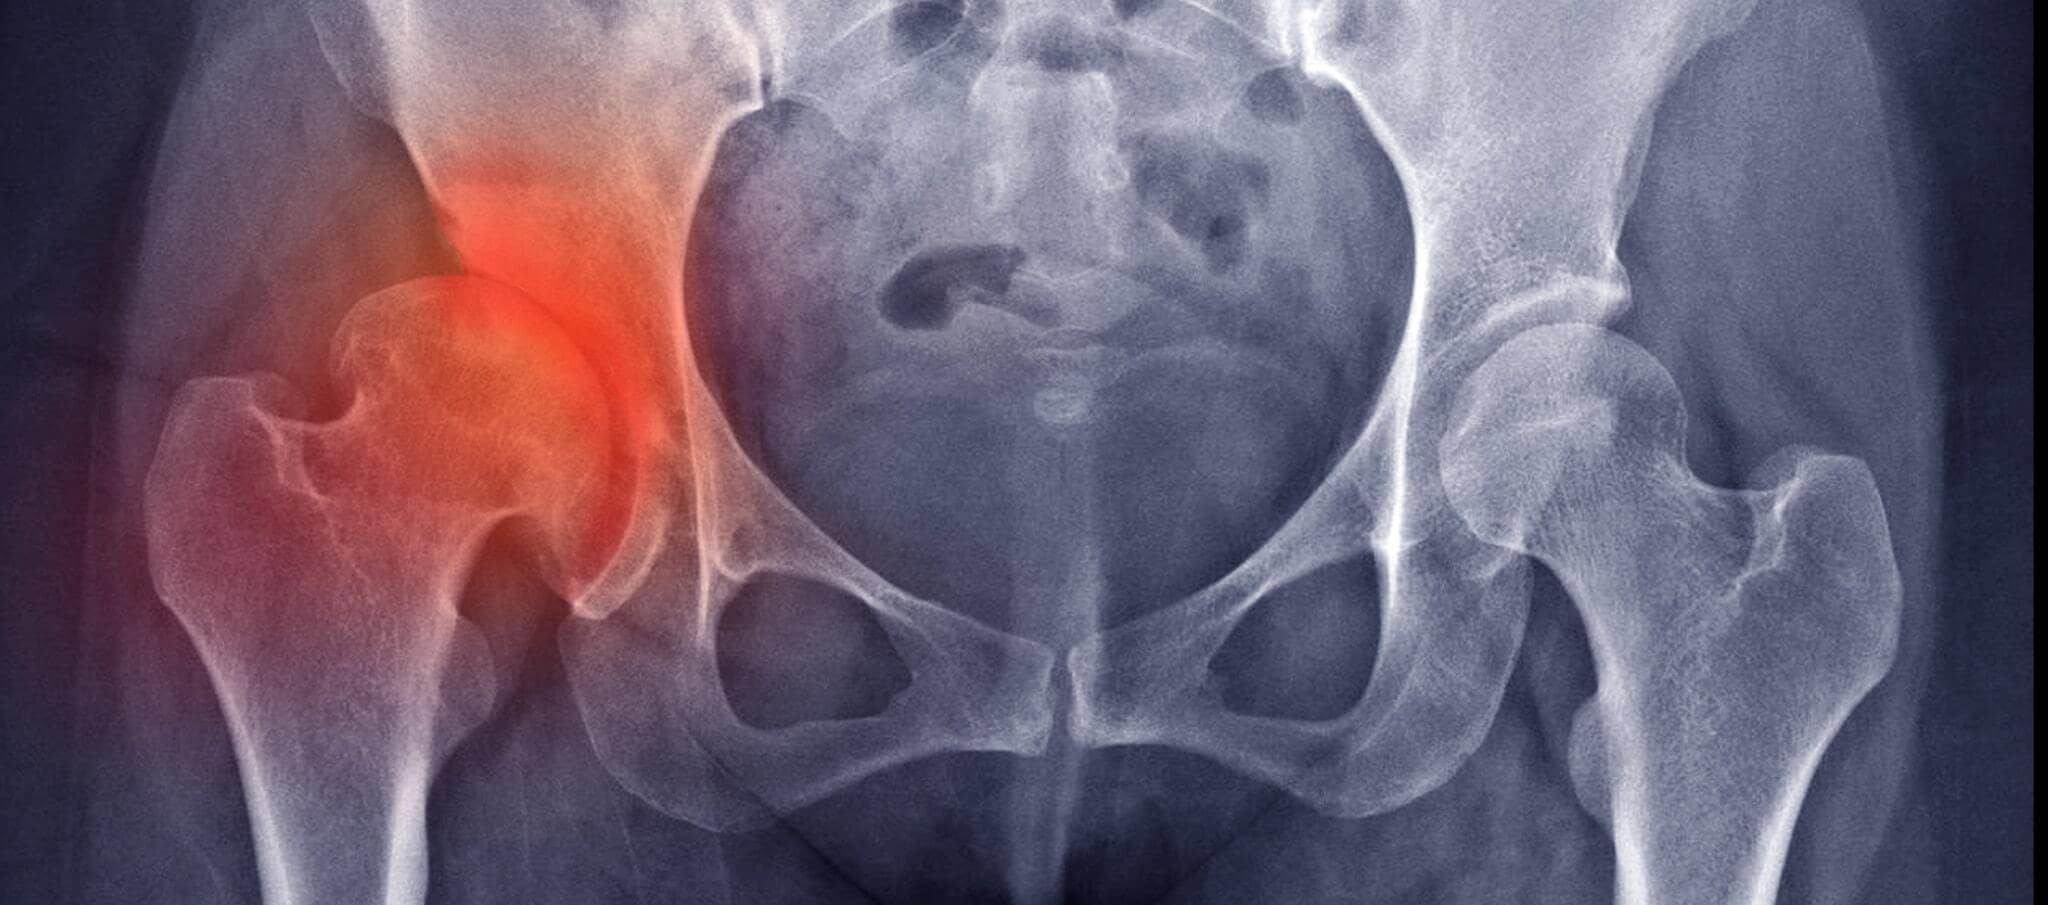 Comment soulager l’arthrose de la hanche ? | Dr Paillard | Paris